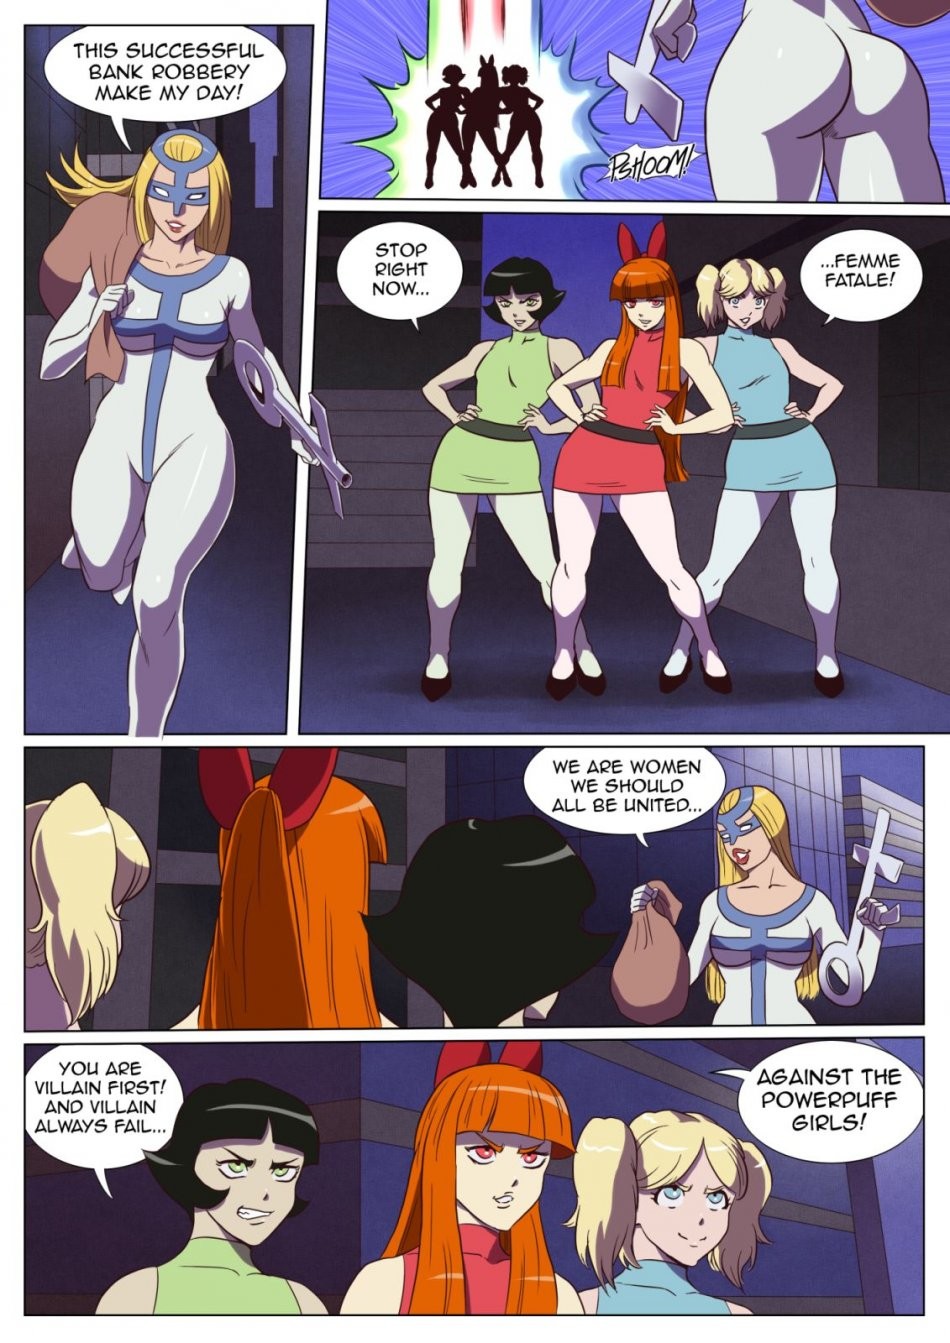 Badass Powerpuff Girls vs Femme Fatale